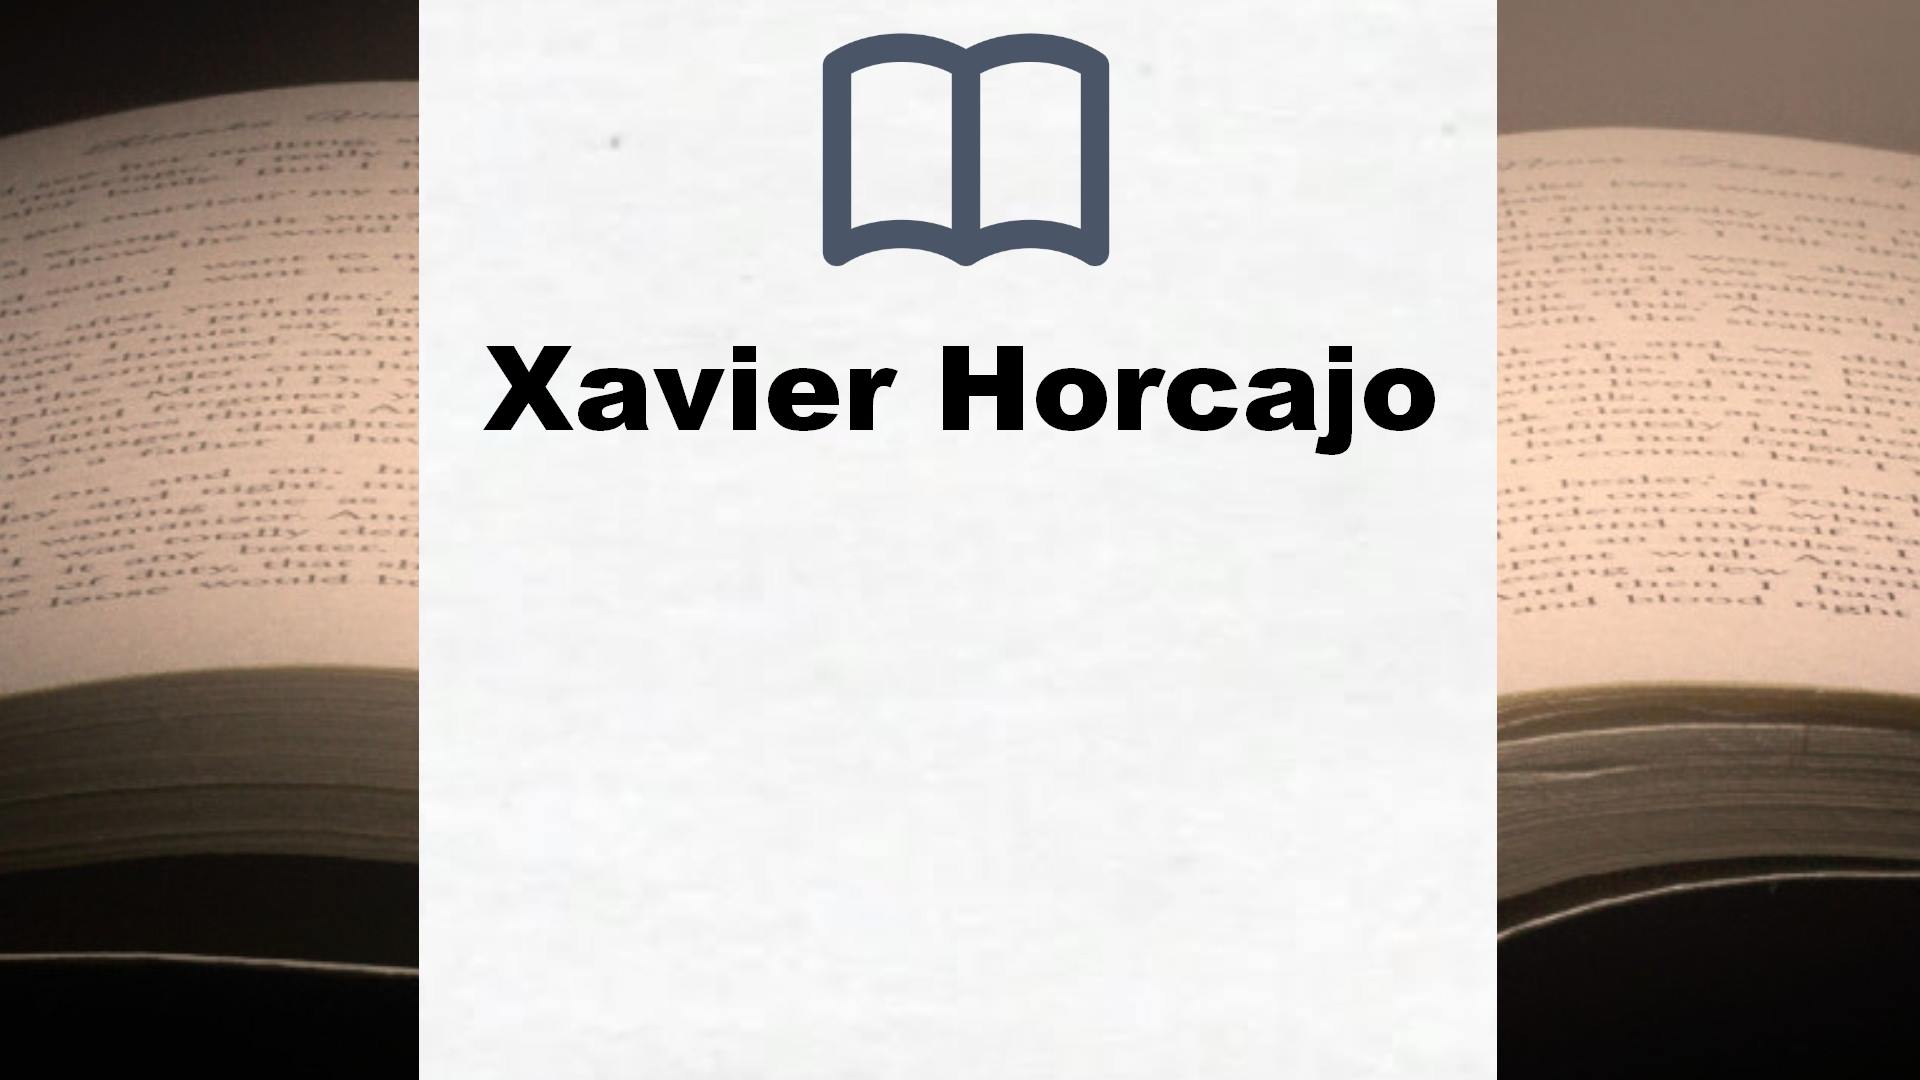 Libros Xavier Horcajo